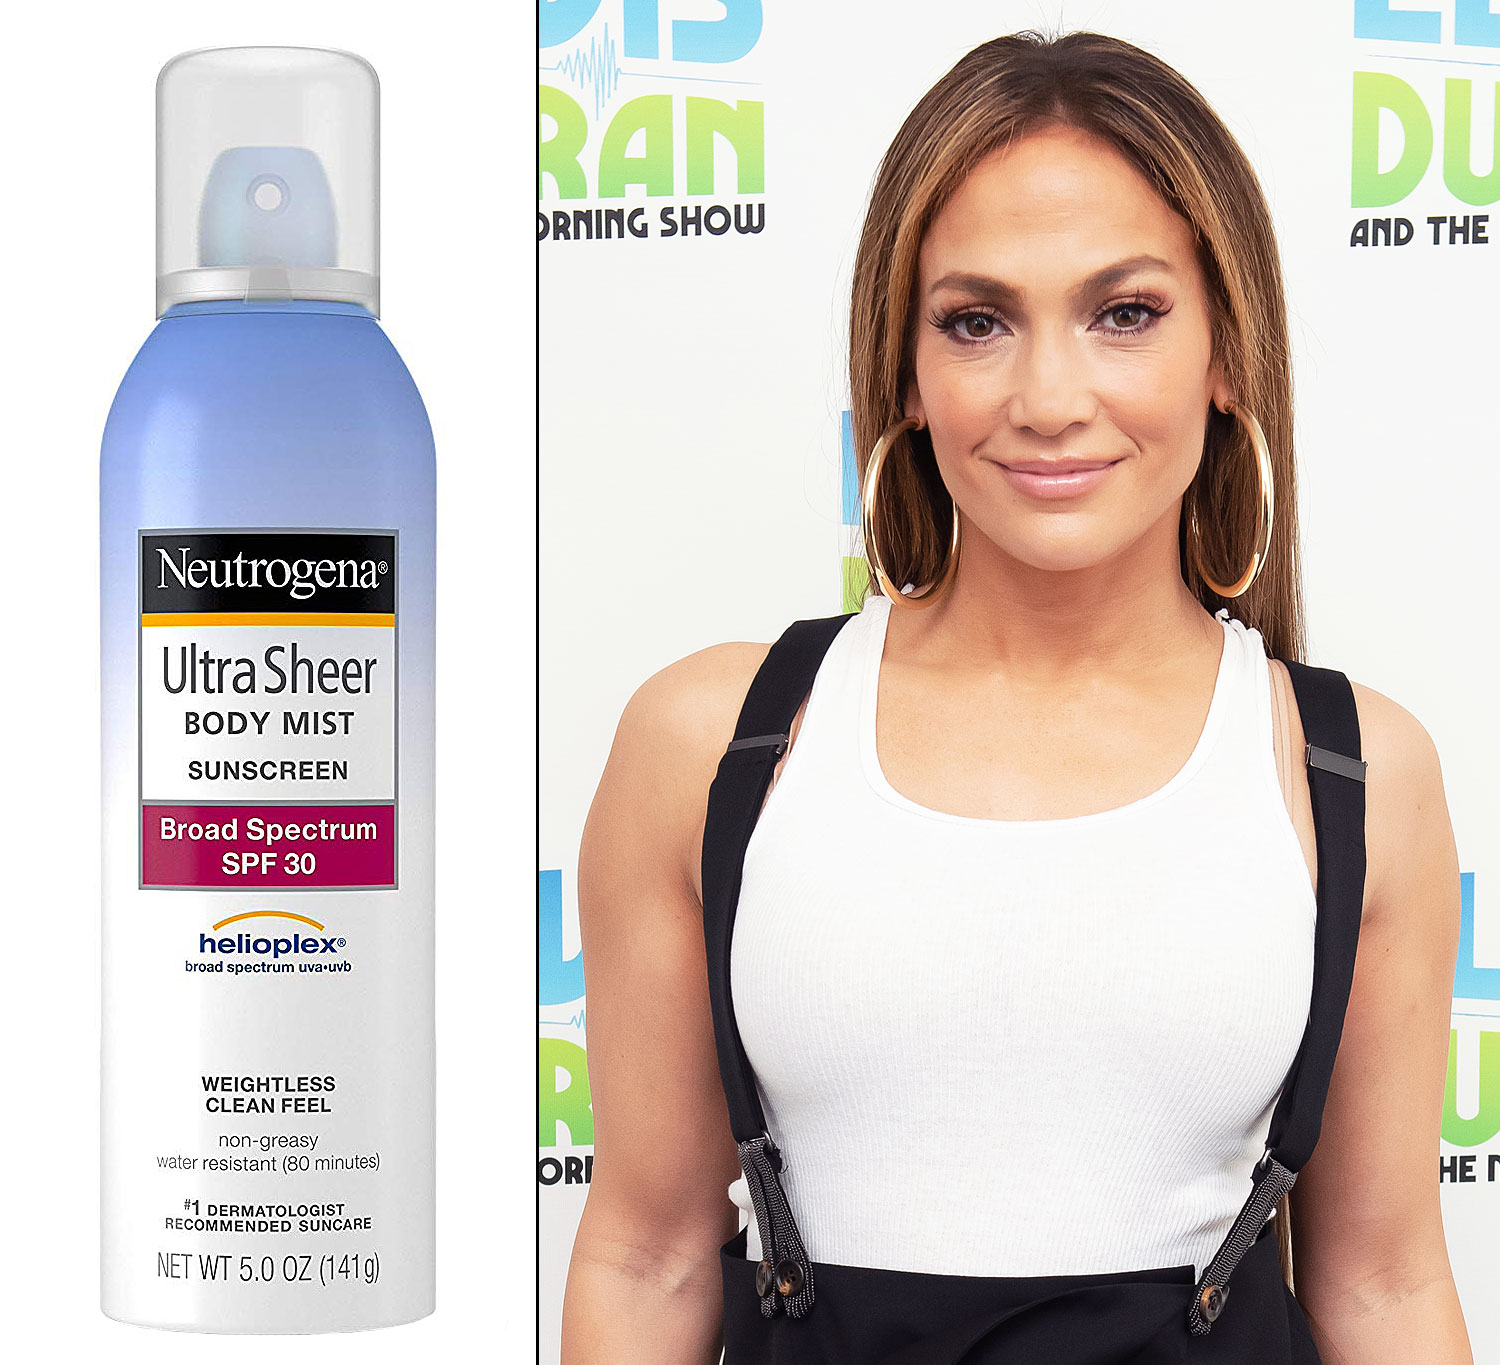 Neutrogena Body Mist Sunscreen Jennifer Lopez